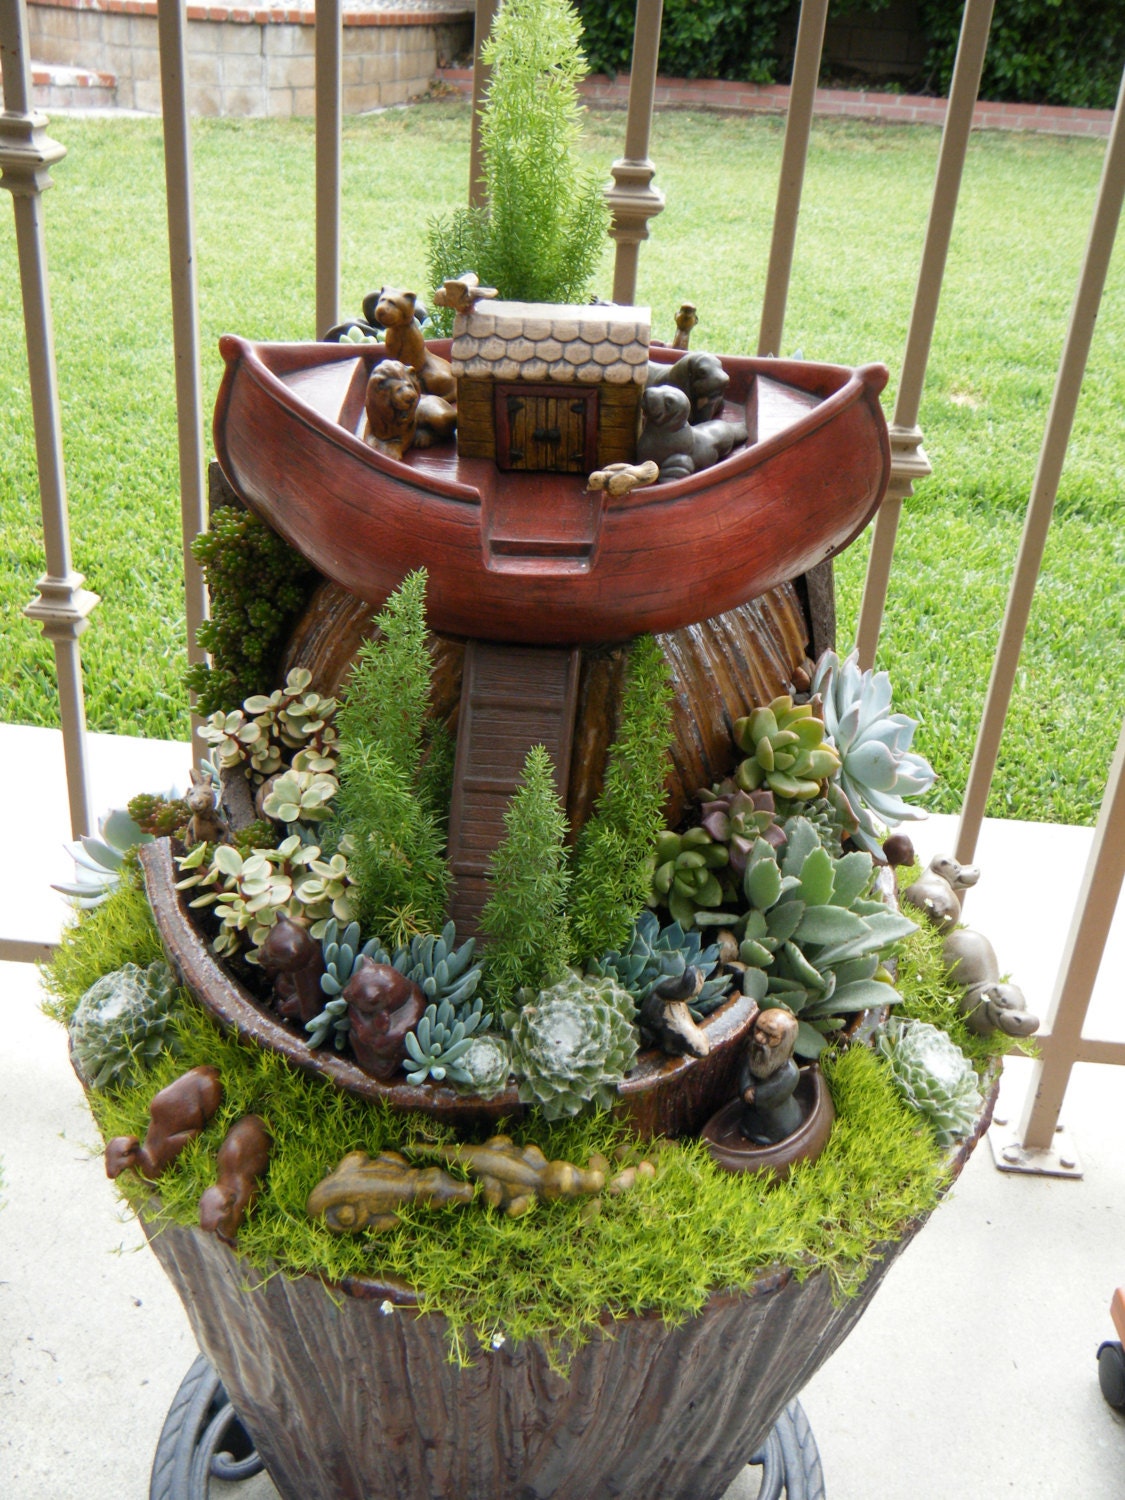 Succulent planter Noah's Ark scene - One of a kind